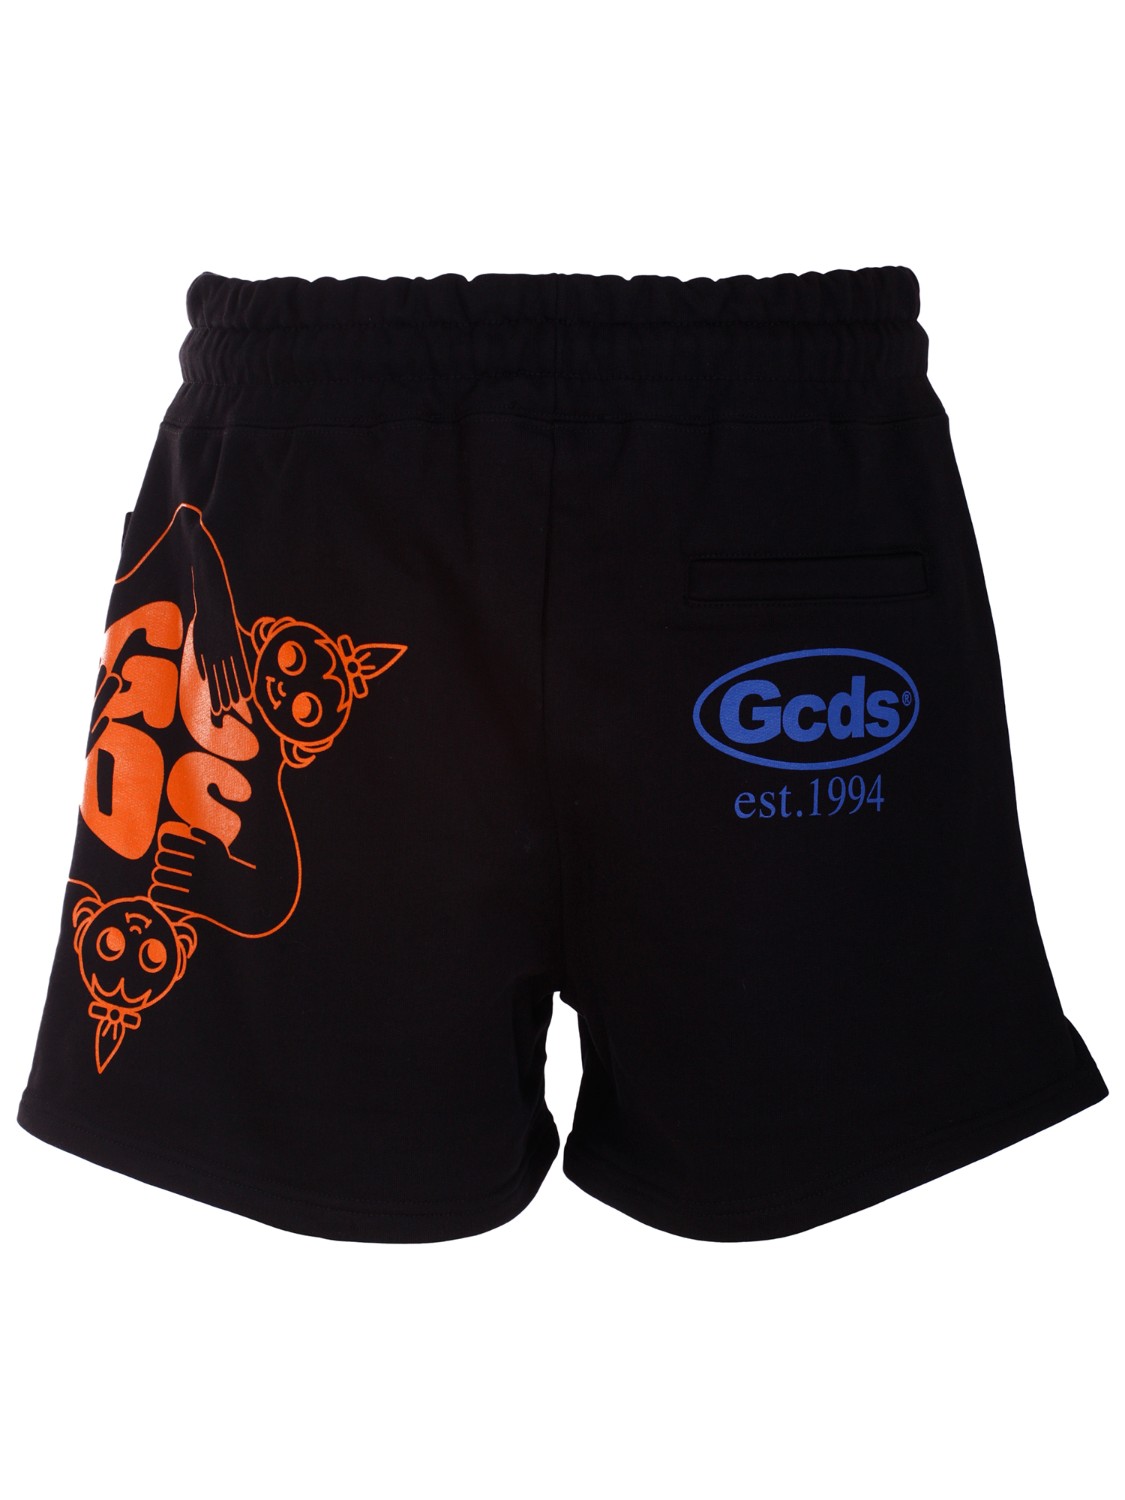 shop GCDS Saldi Bermuda: GCDS bermuda jogging con stampe logo.
Oversize fit.
Composizione: 100% cotone.
Fabbricato in Italia.. SS22M300105-02 number 6960585